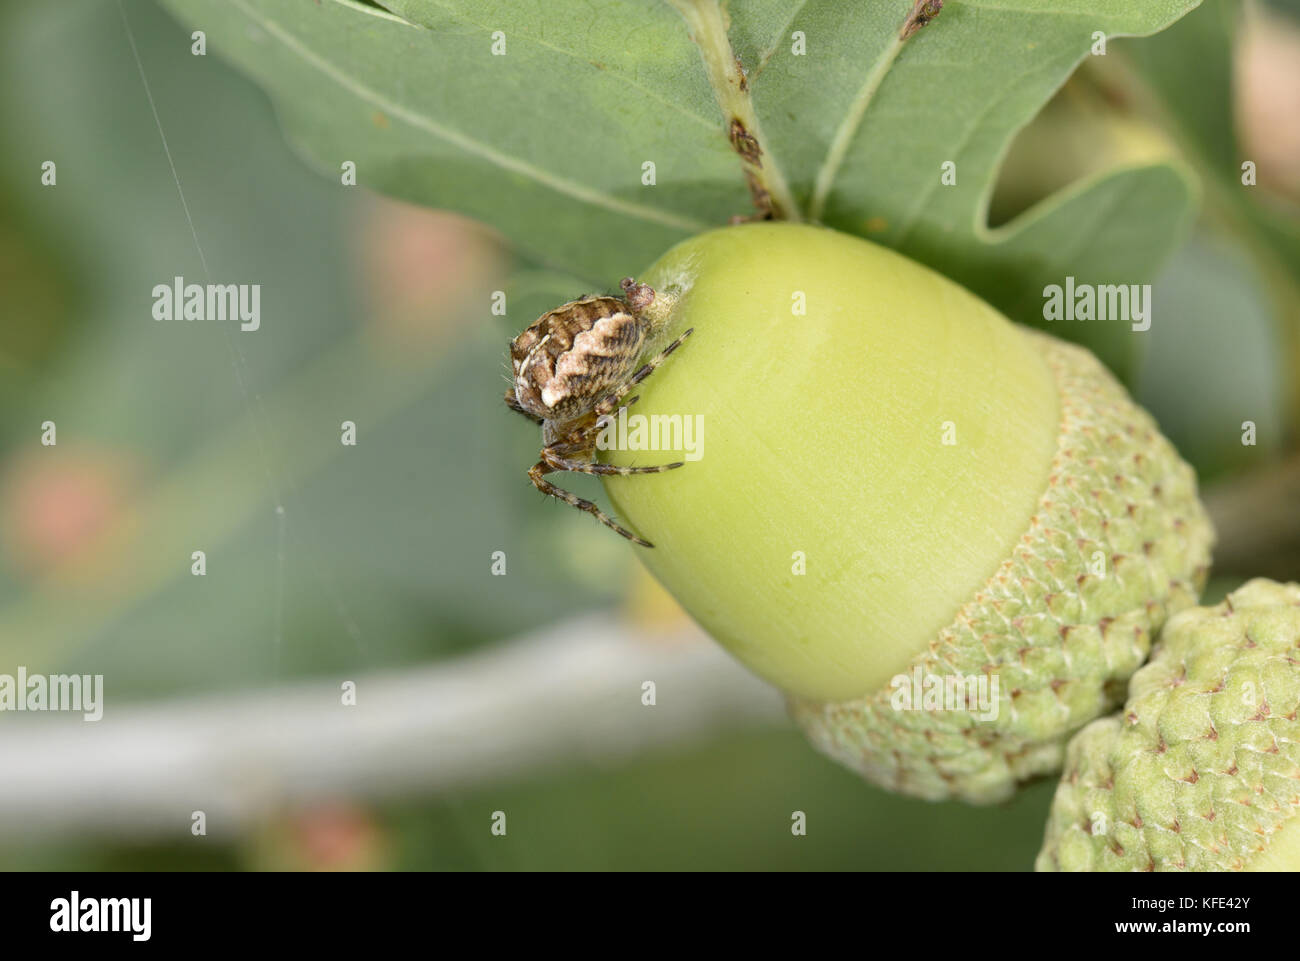 Garden Spider - Araneus diadematus Stock Photo